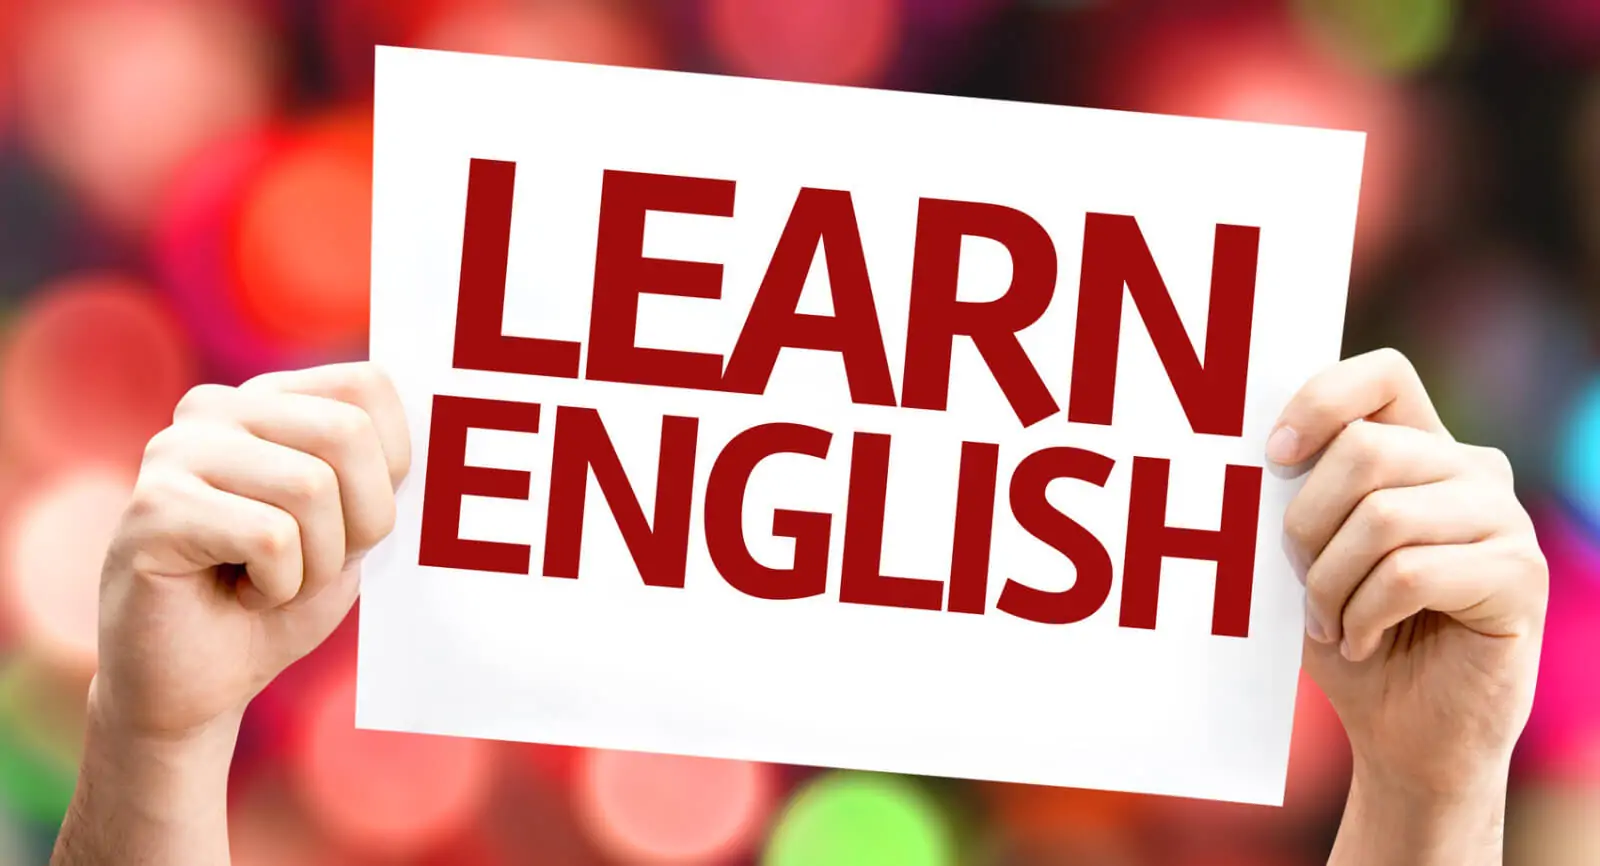 Learn English Podcasts iOS için ingilizce öğrenme uygulaması indir